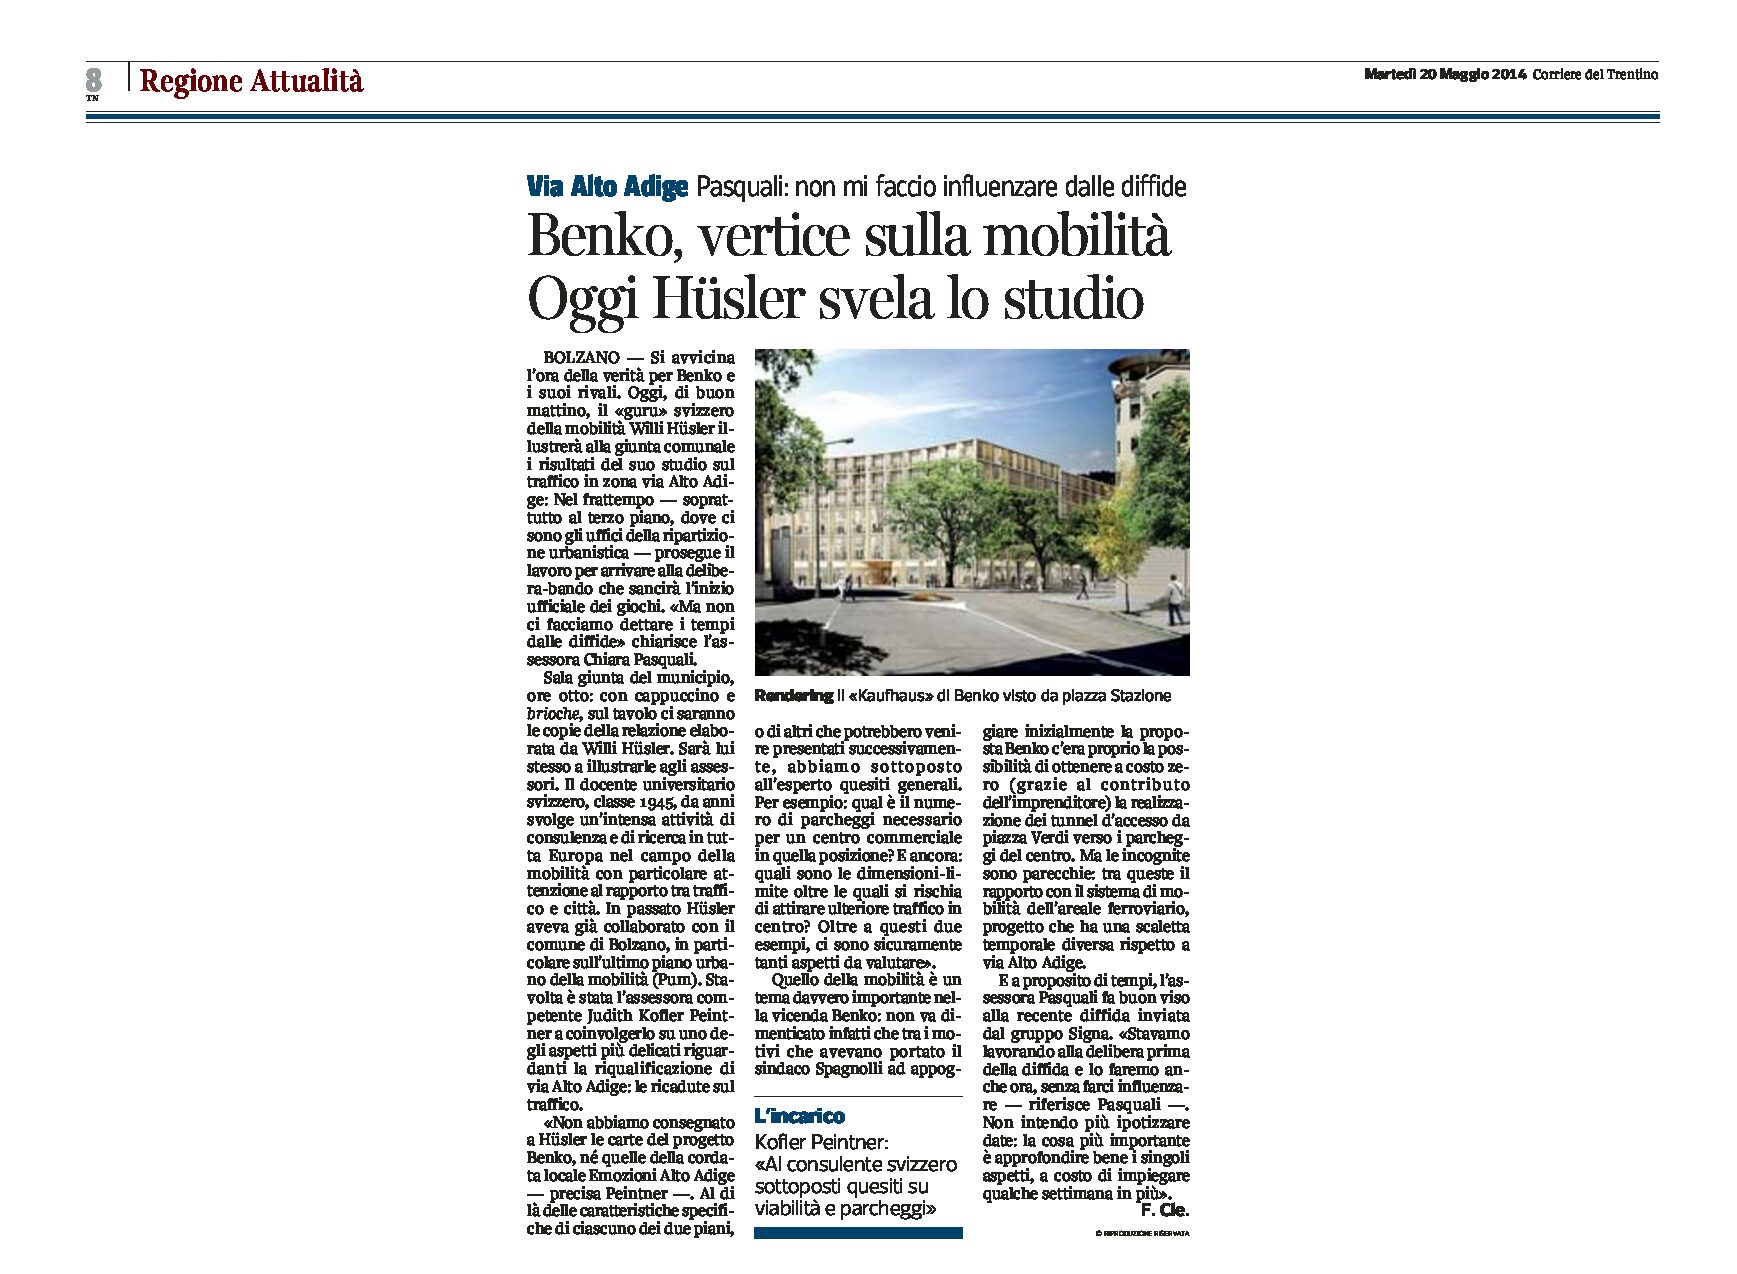 Bolzano: progetto Benko, vertice sulla mobilità. Hüsler svela lo studio.